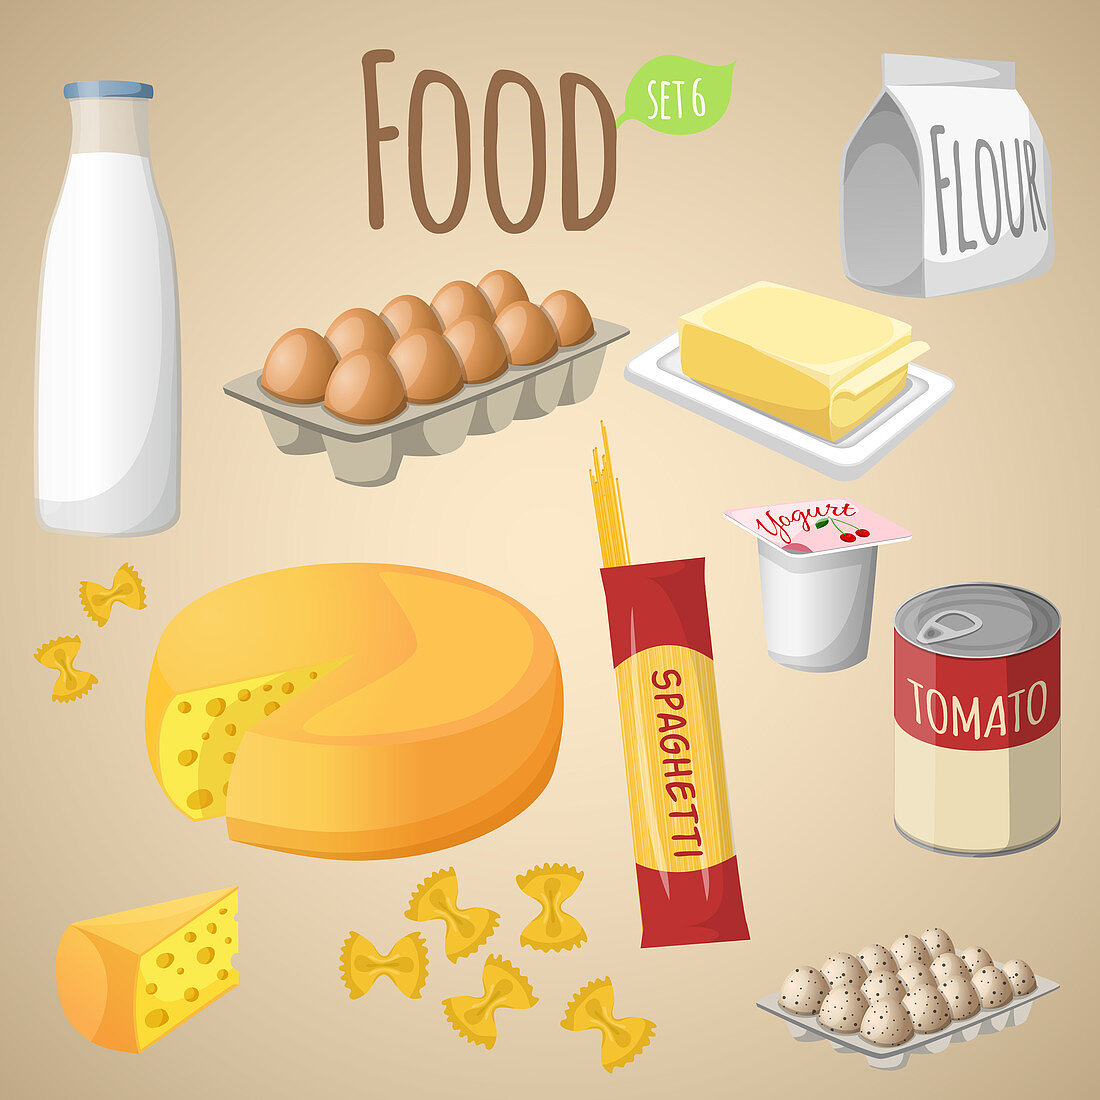 Food items, illustration